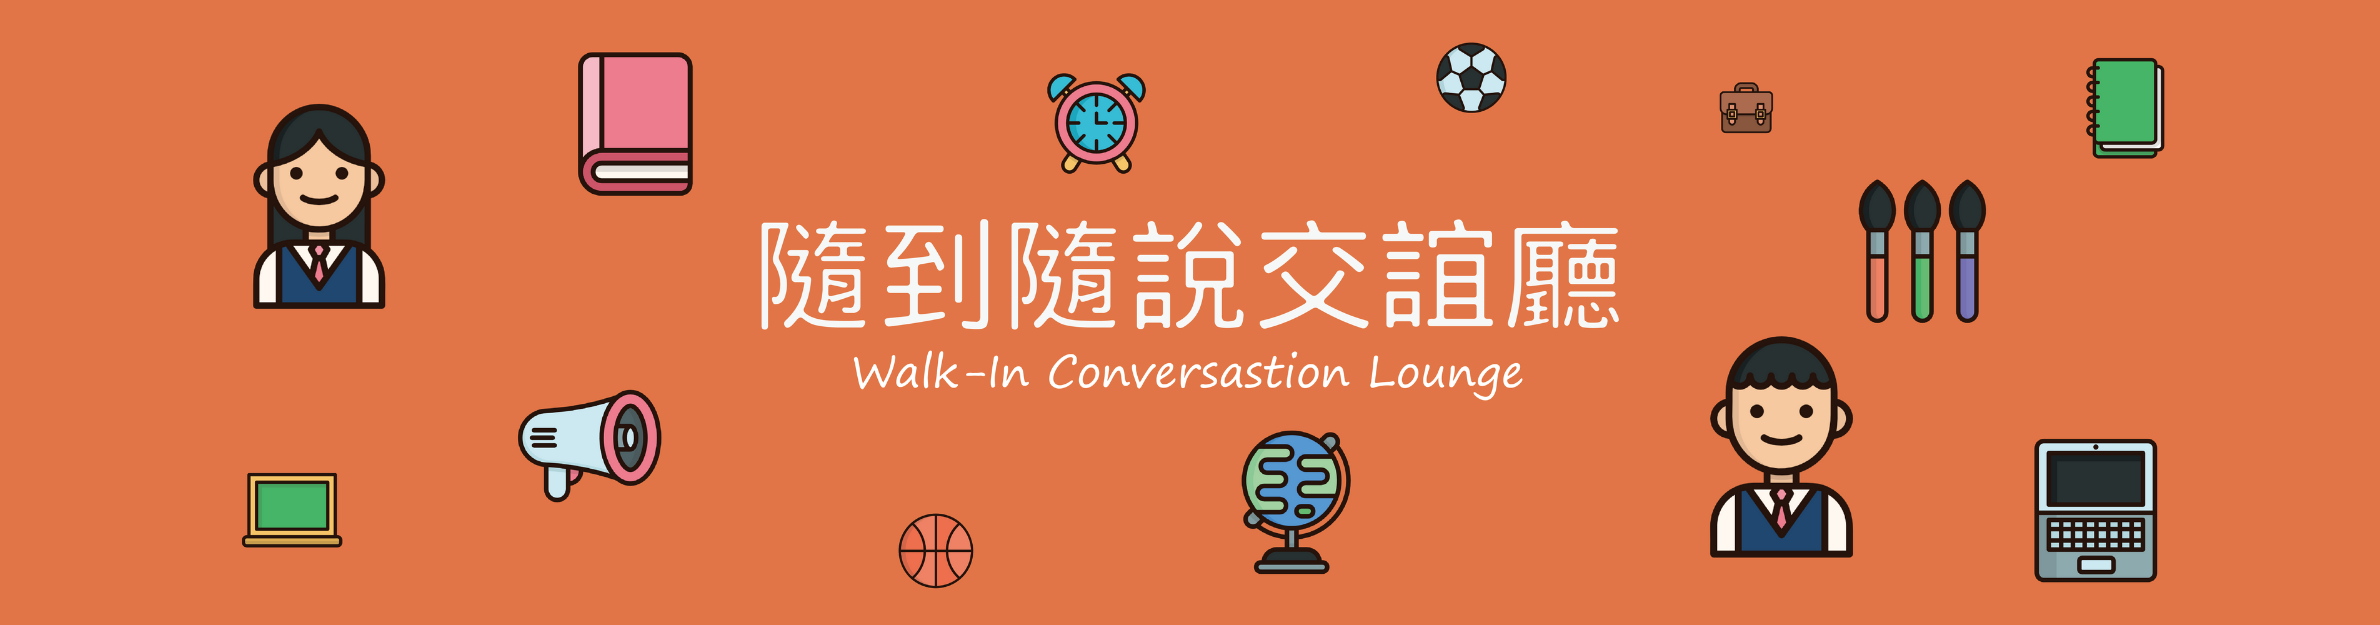 Walk-In Conversation Lounge